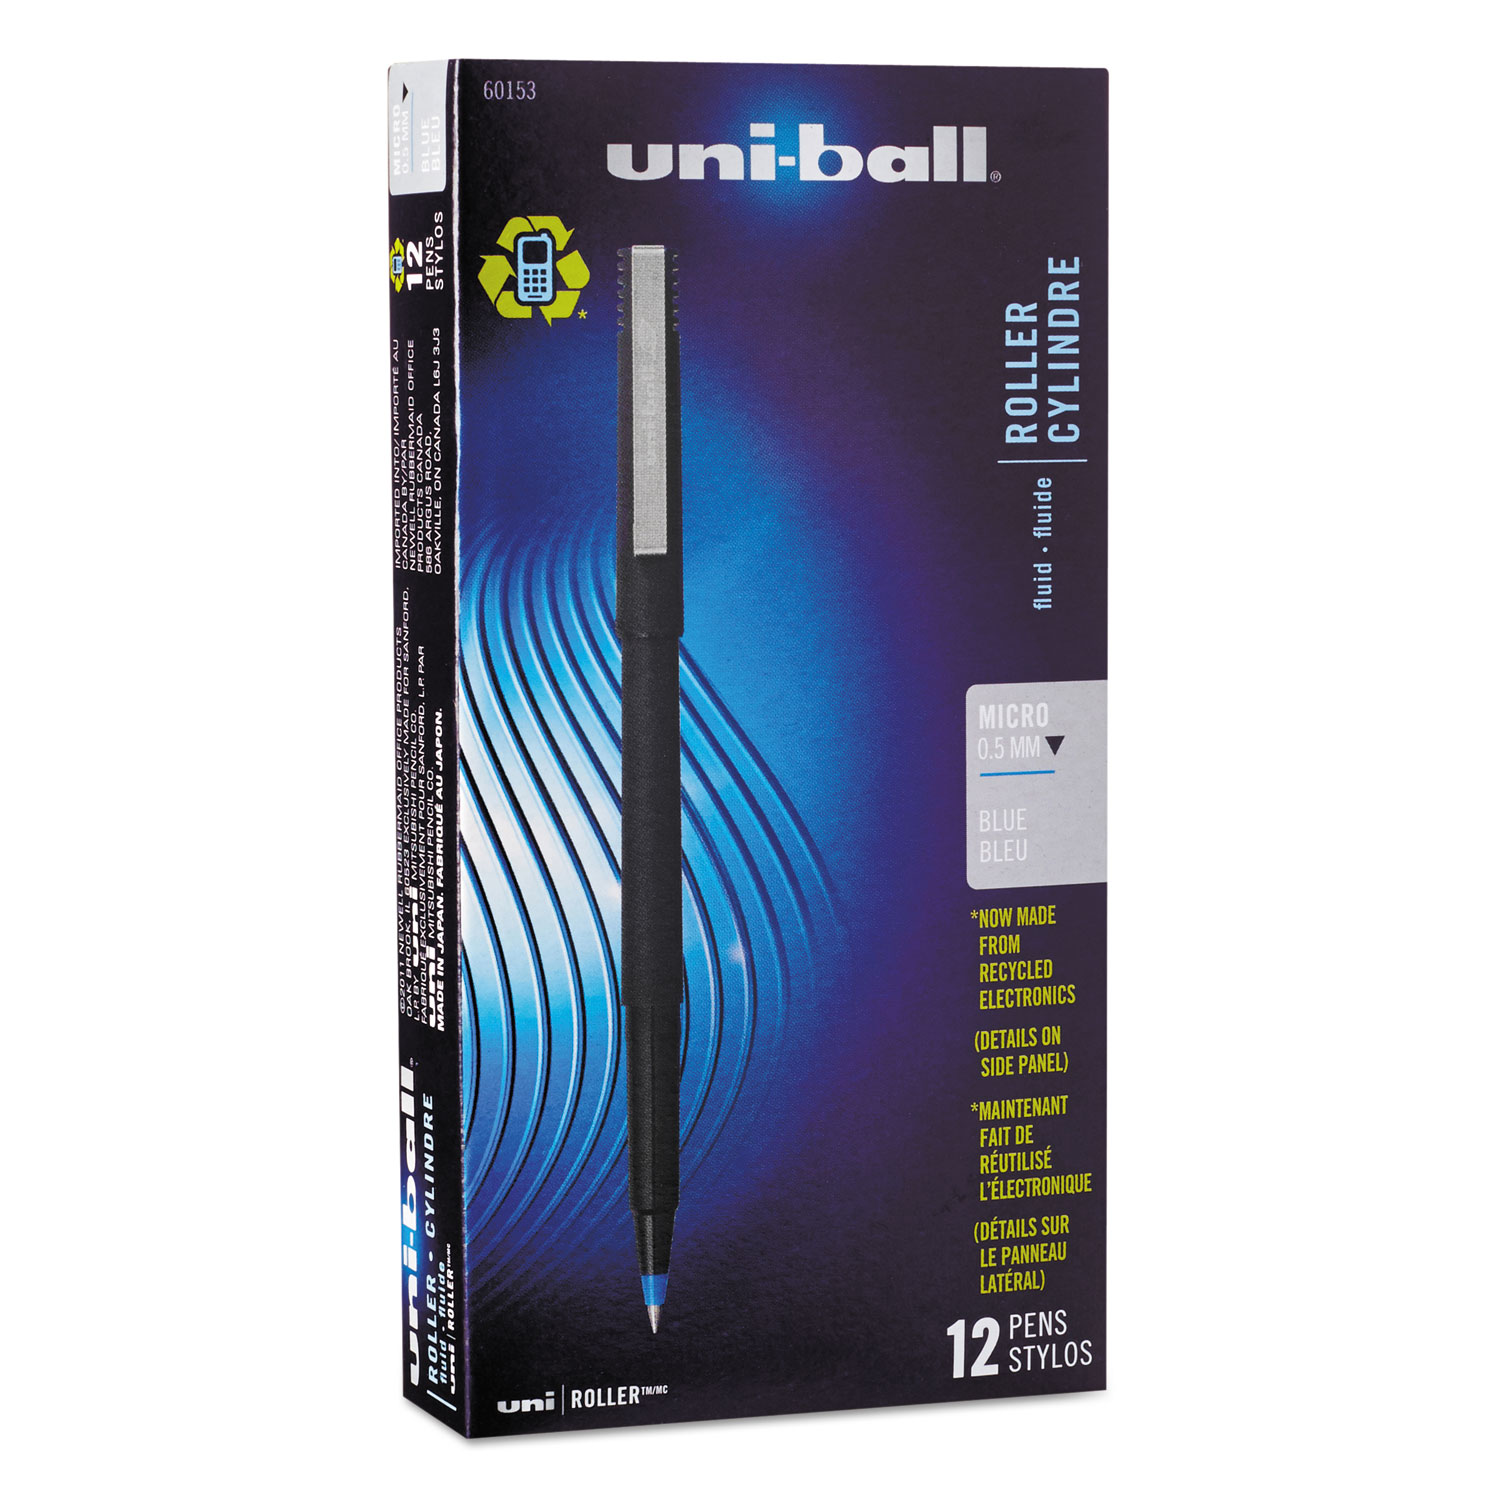  uni-ball 60153 Stick Roller Ball Pen, Micro 0.5mm, Blue Ink, Black Matte Barrel, Dozen (UBC60153) 